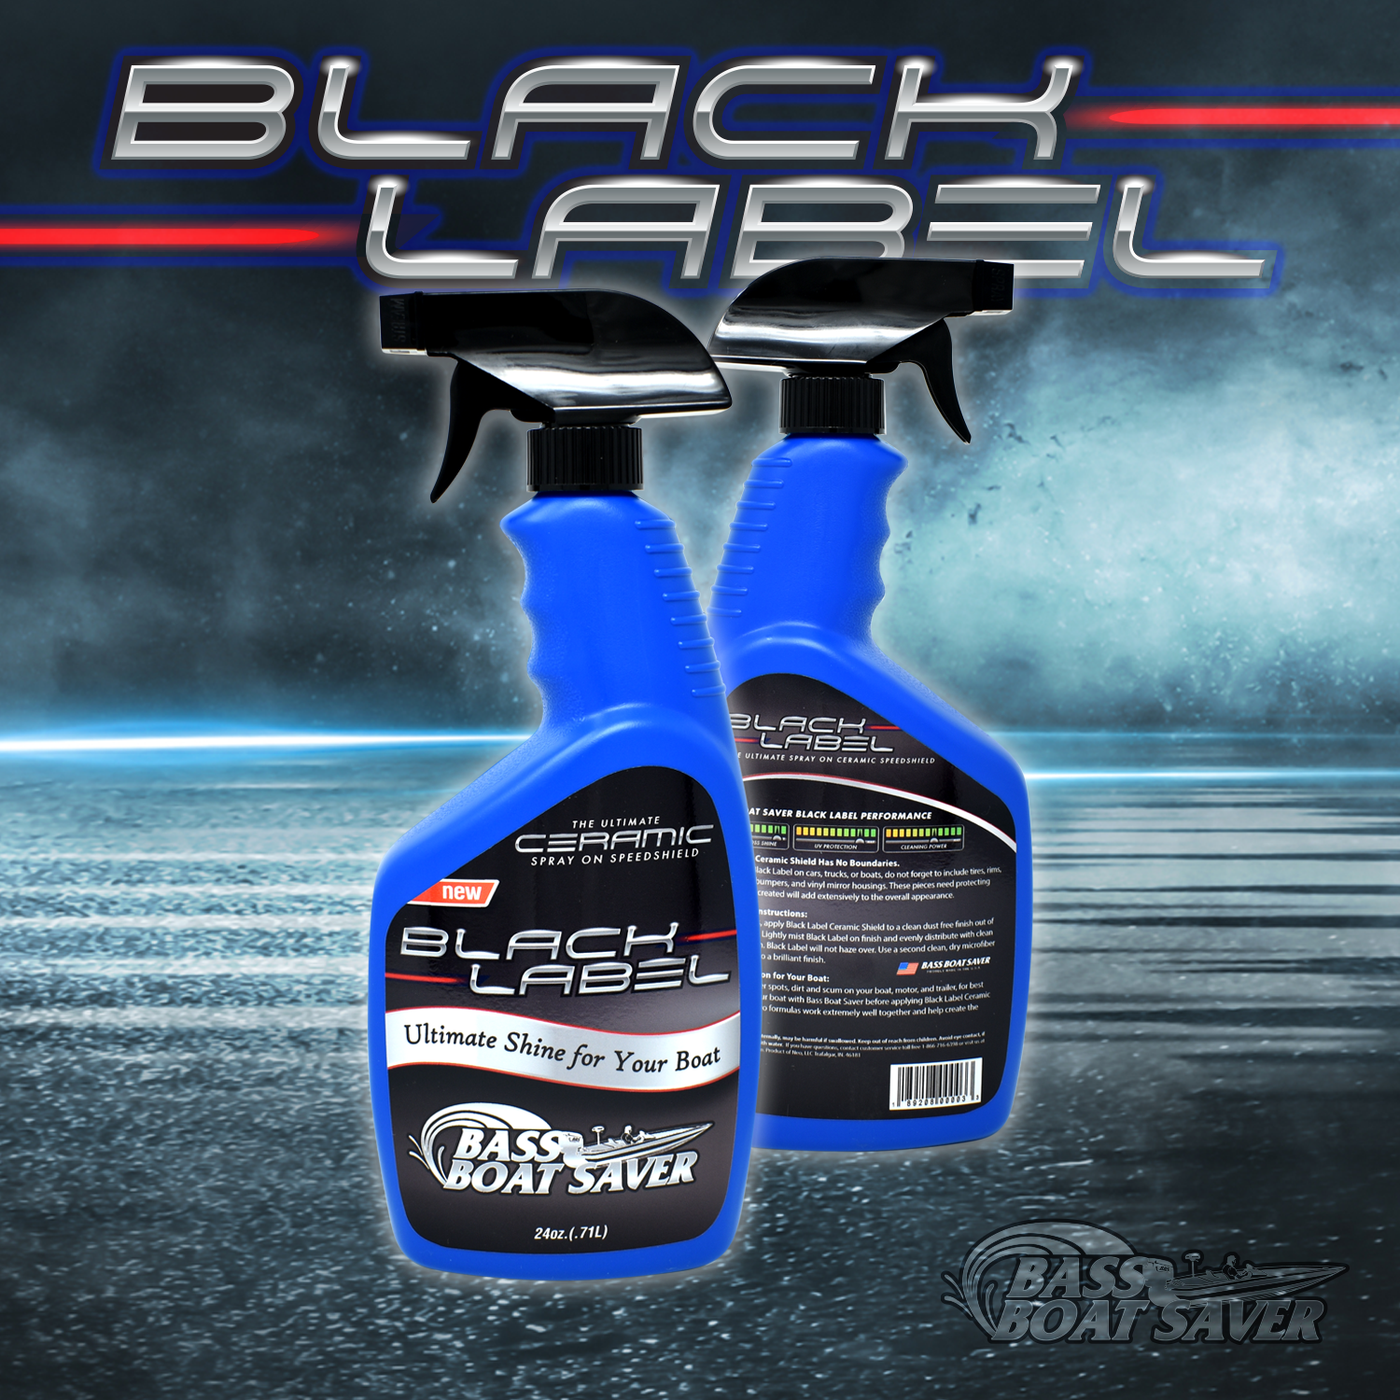 Case 24 oz. Black Label Ceramic Spray - 12 Pack